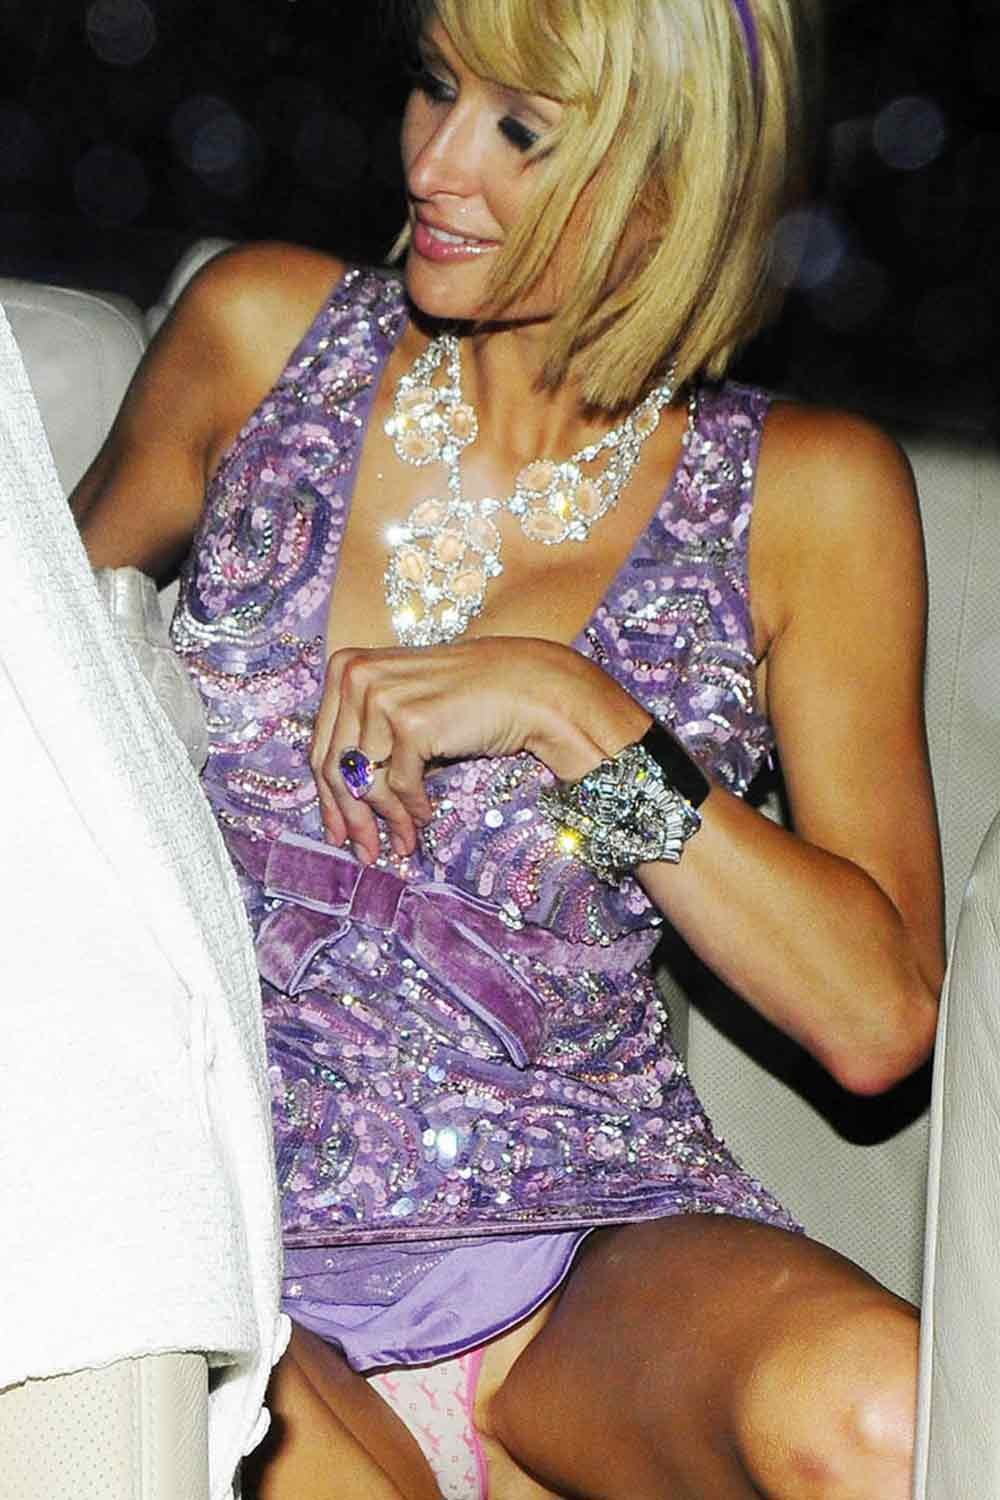 Paris Hilton upskrit of her pink panties #75370398